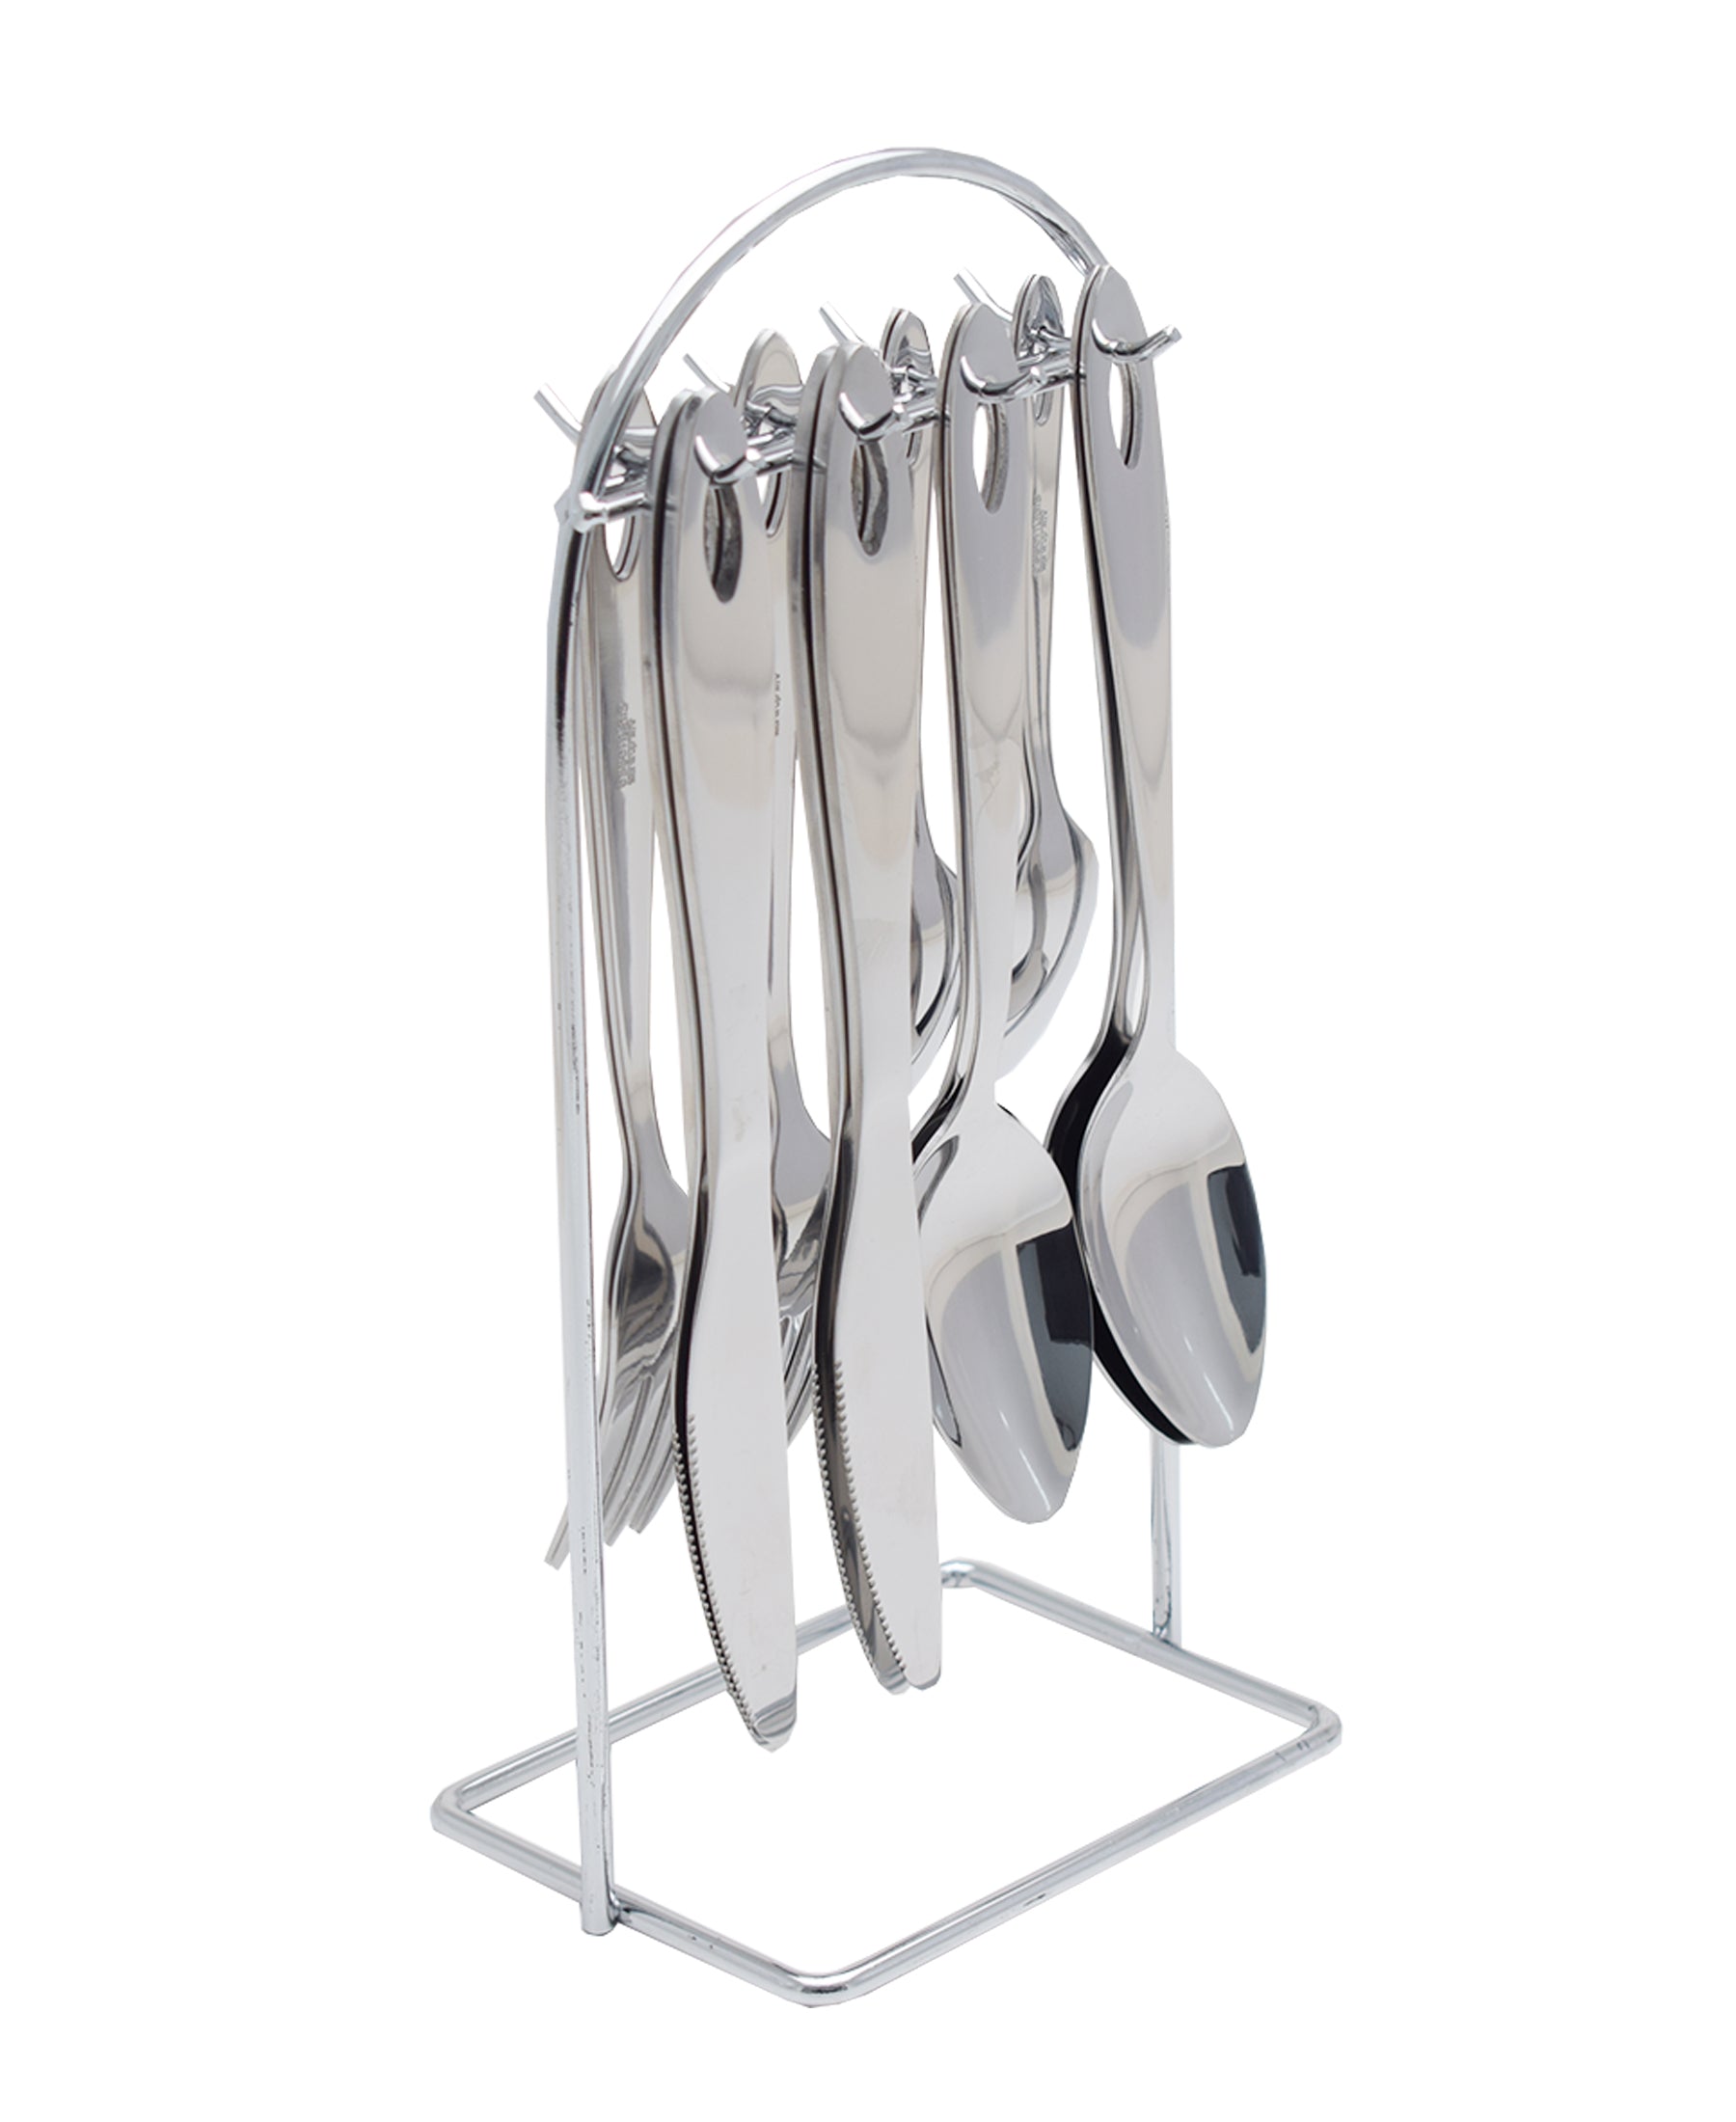 Eetrite - Teardrop Hanging Cutlery Set of 16 - Silver